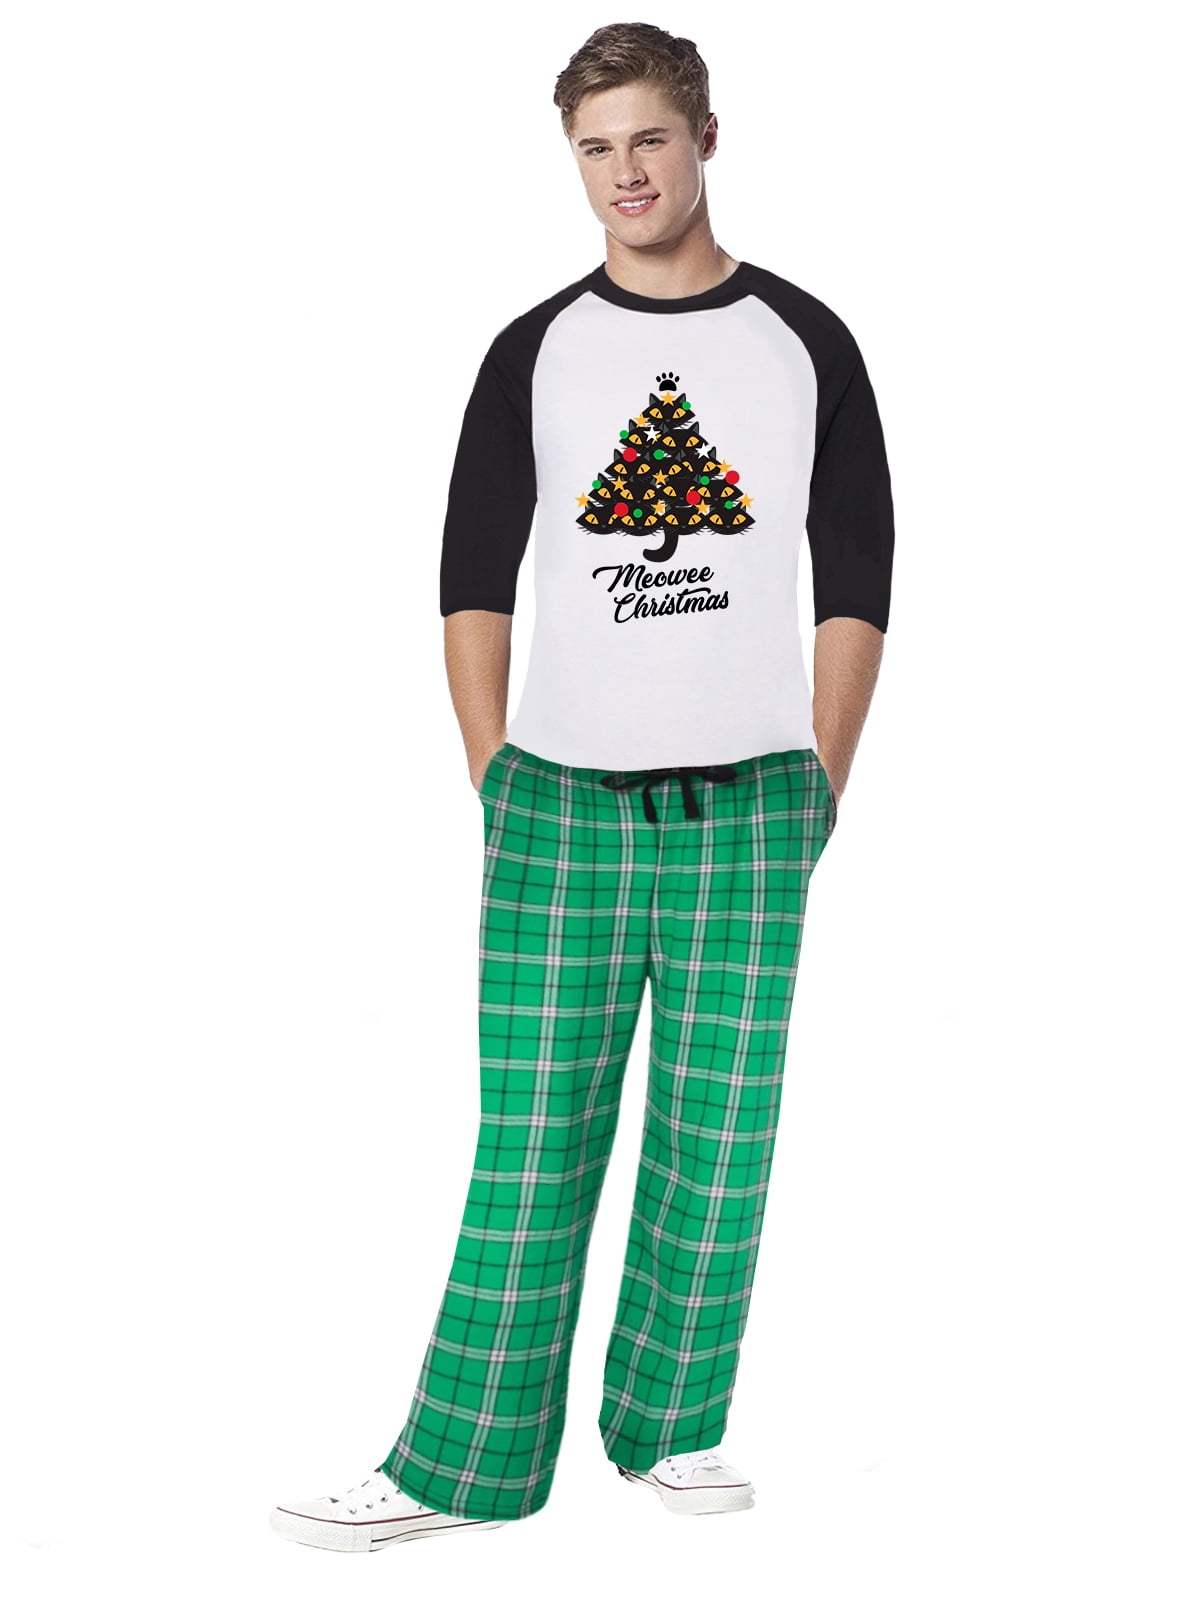 Awkward Styles Family Christmas Pajamas for Men Xmas Tree Meowee Xmas ...